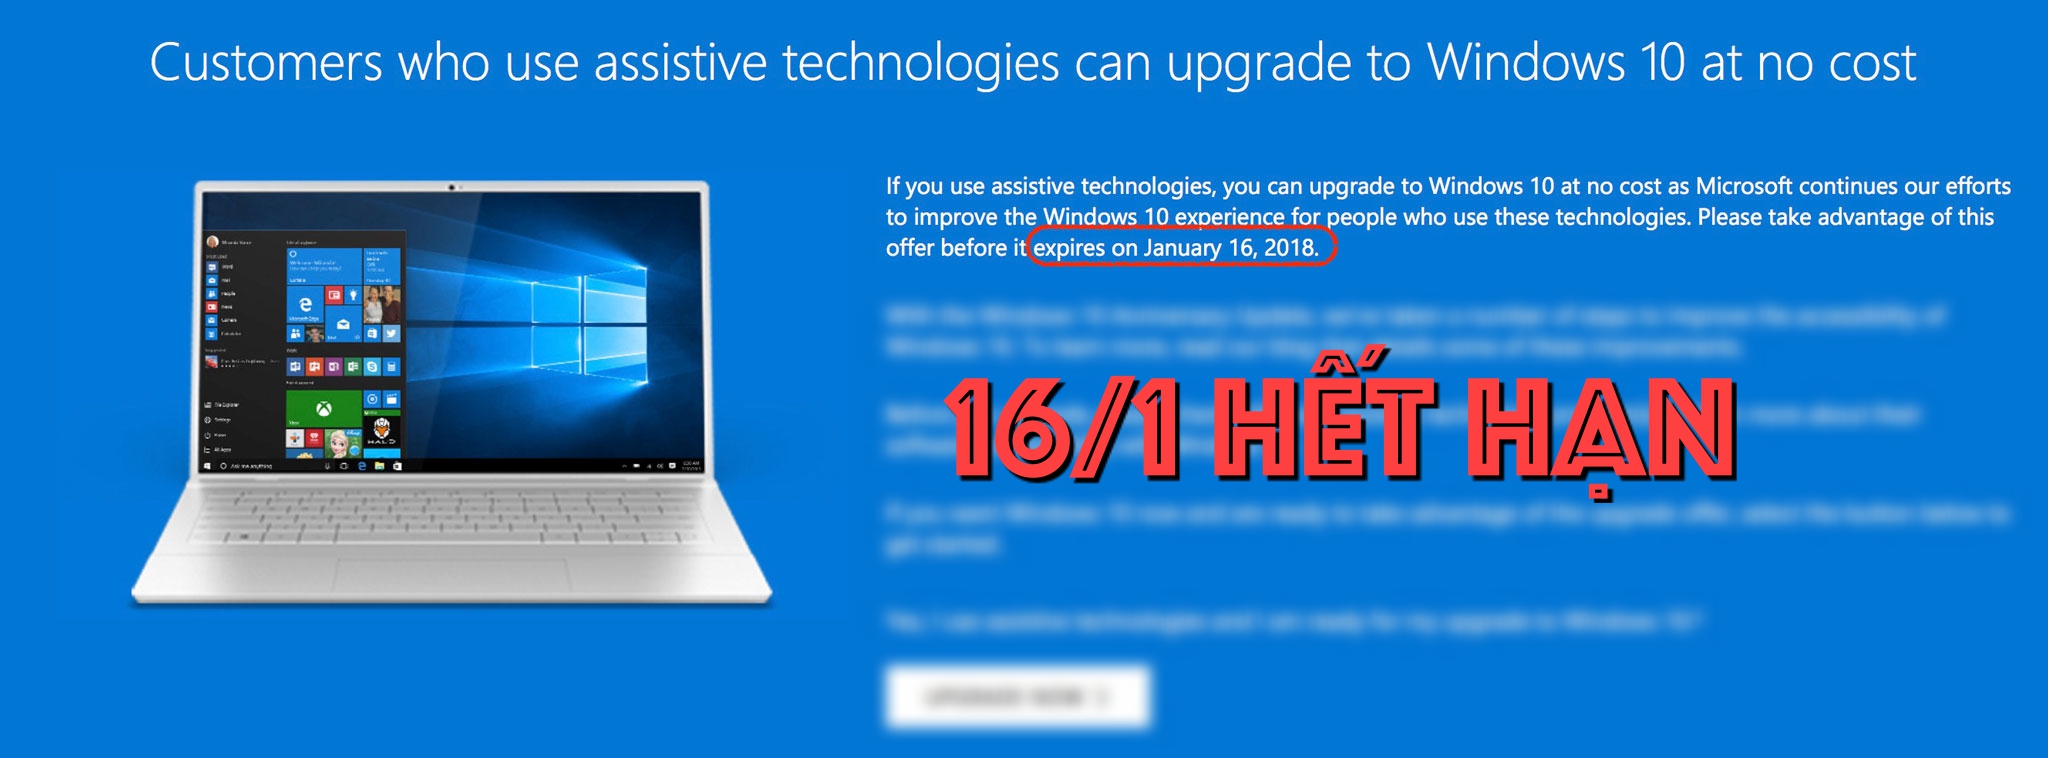 Ngày 16/1 này, Windows 10 sẽ ngừng cho phép cập nhật miễn phí, anh em cân nhắc lên ngay